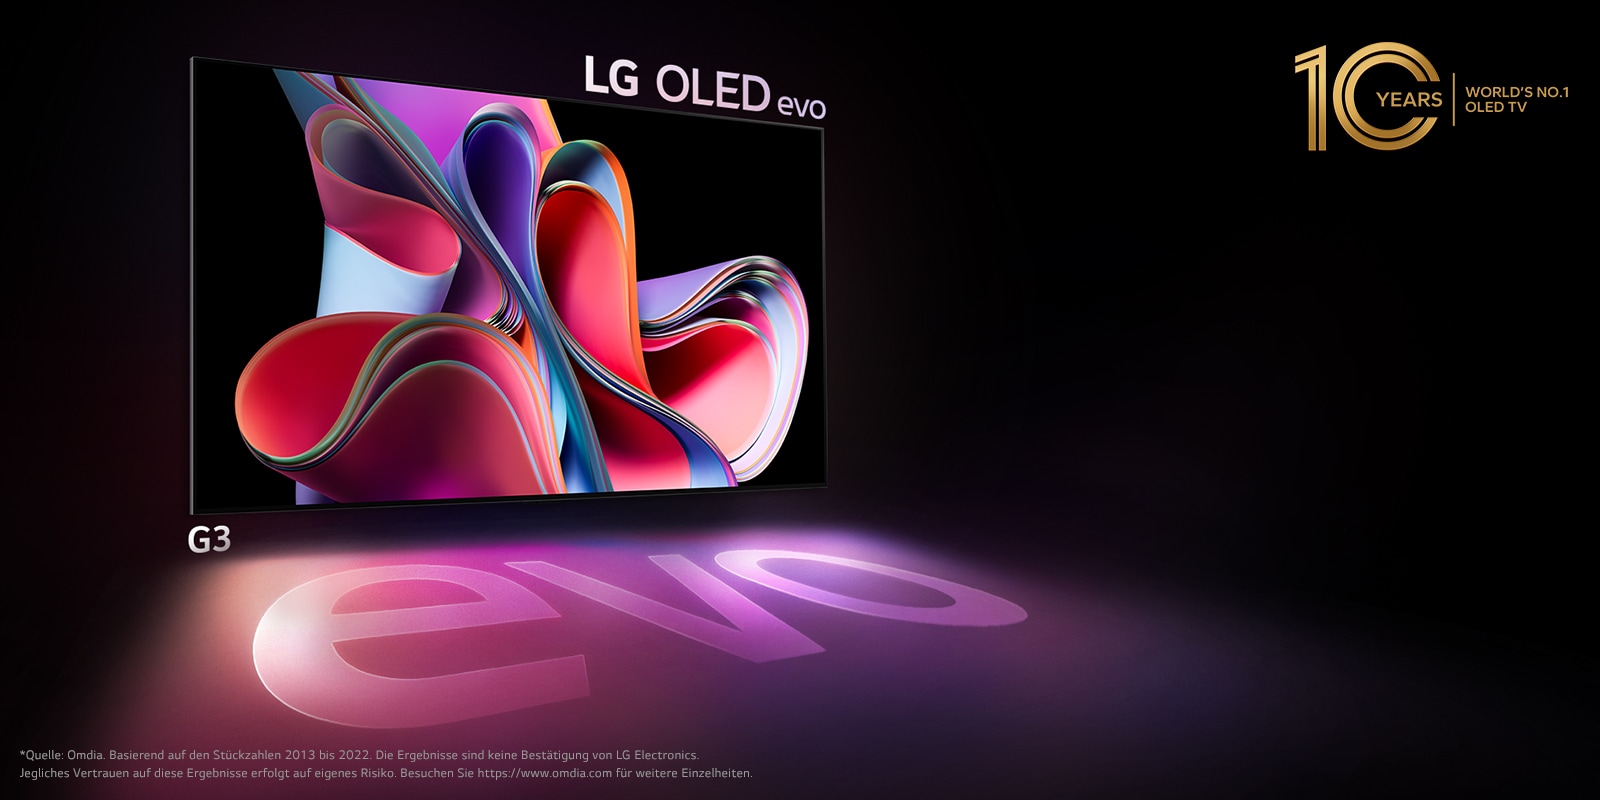 Ein Bild des LG OLED G3 auf einem schwarzen Hintergrund zeigt ein abstraktes Kunstwerk in leuchtendem Pink und Violett. Der Bildschirm präsentiert sich in einem farbenfrohen Schatten mit dem Wort „evo“. Das Emblem „10 Jahre weltweite Nr. 1 OLED TV“ befindet sich oben links auf dem Bild. 